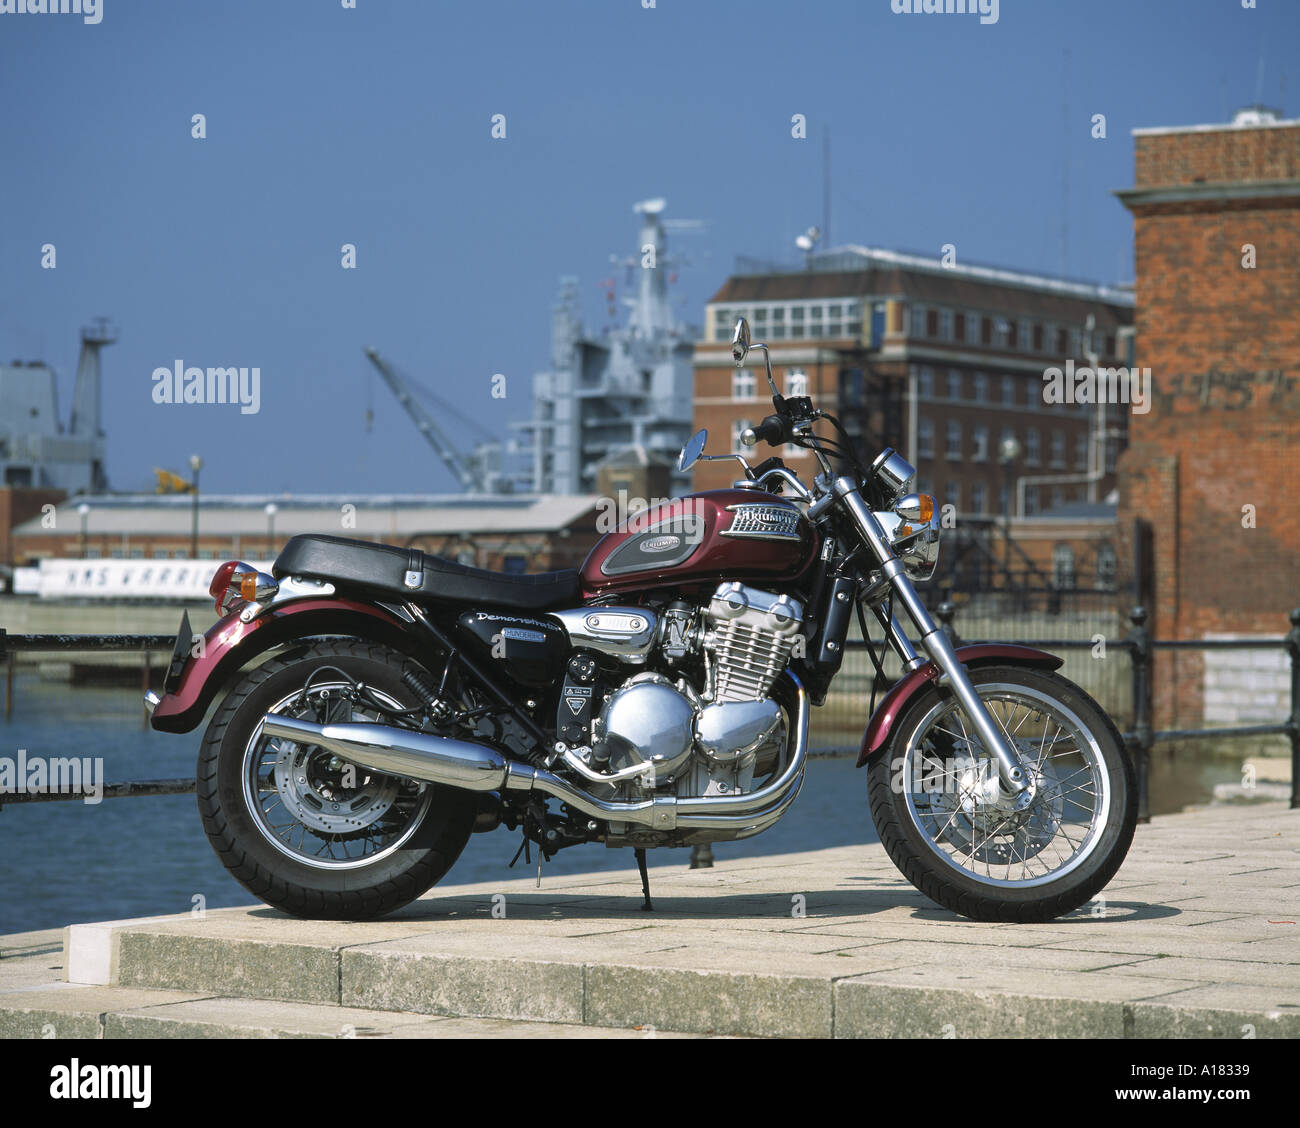 Triumph thunderbird immagini e fotografie stock ad alta risoluzione - Alamy